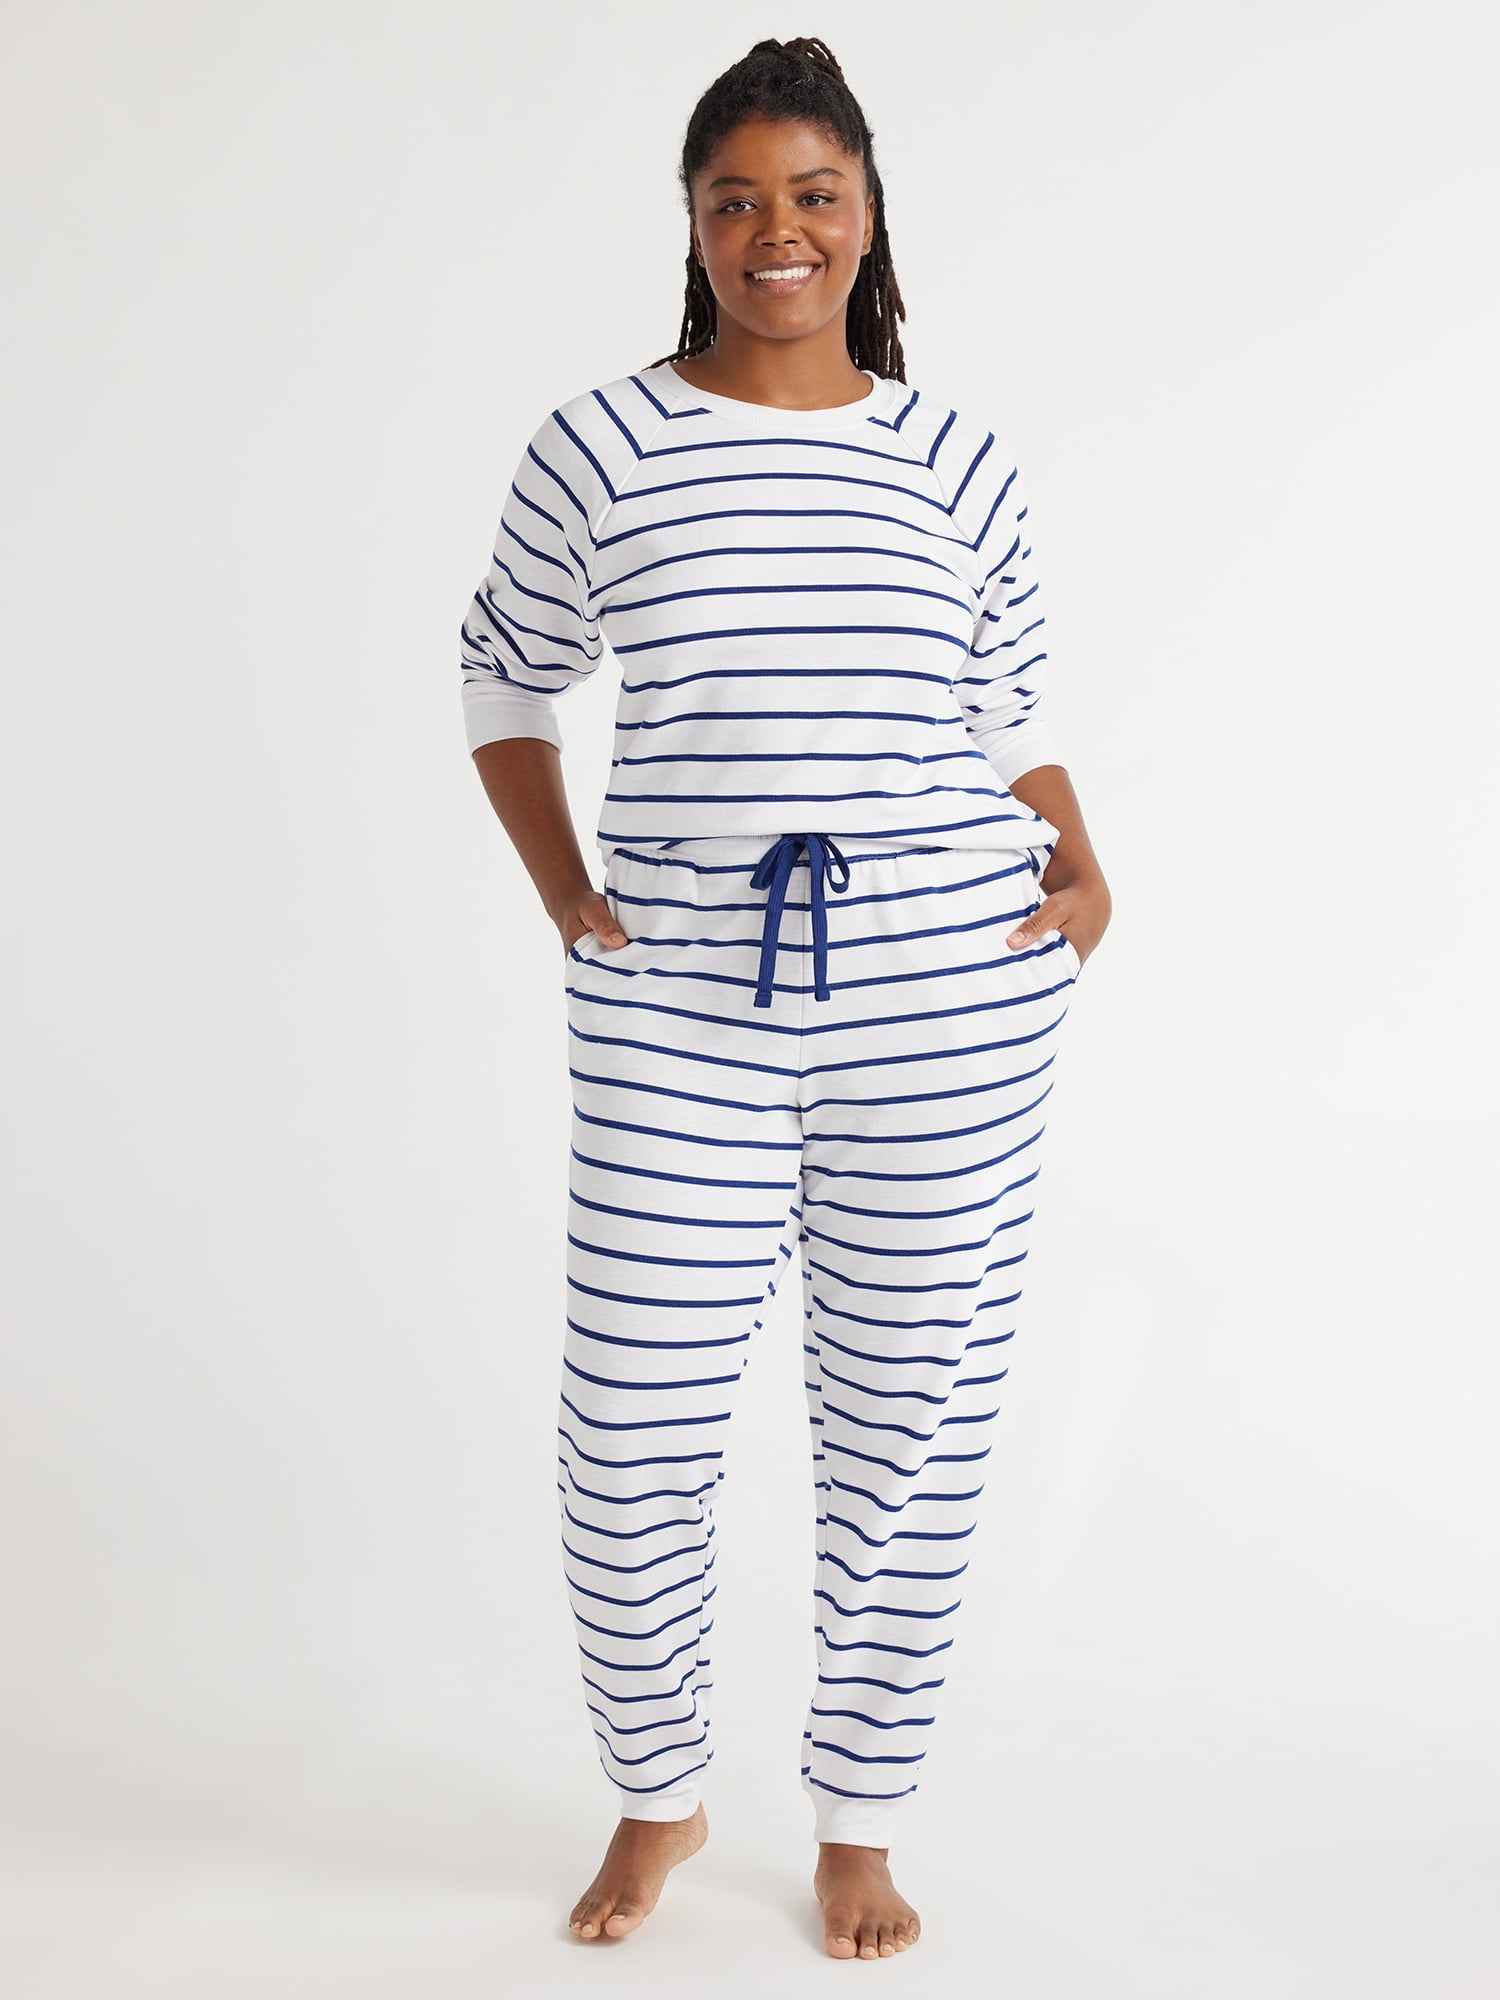 Joyspun Women's Sleep Fleece Top and Joggers Pajama Set, 2-Piece, Sizes ...